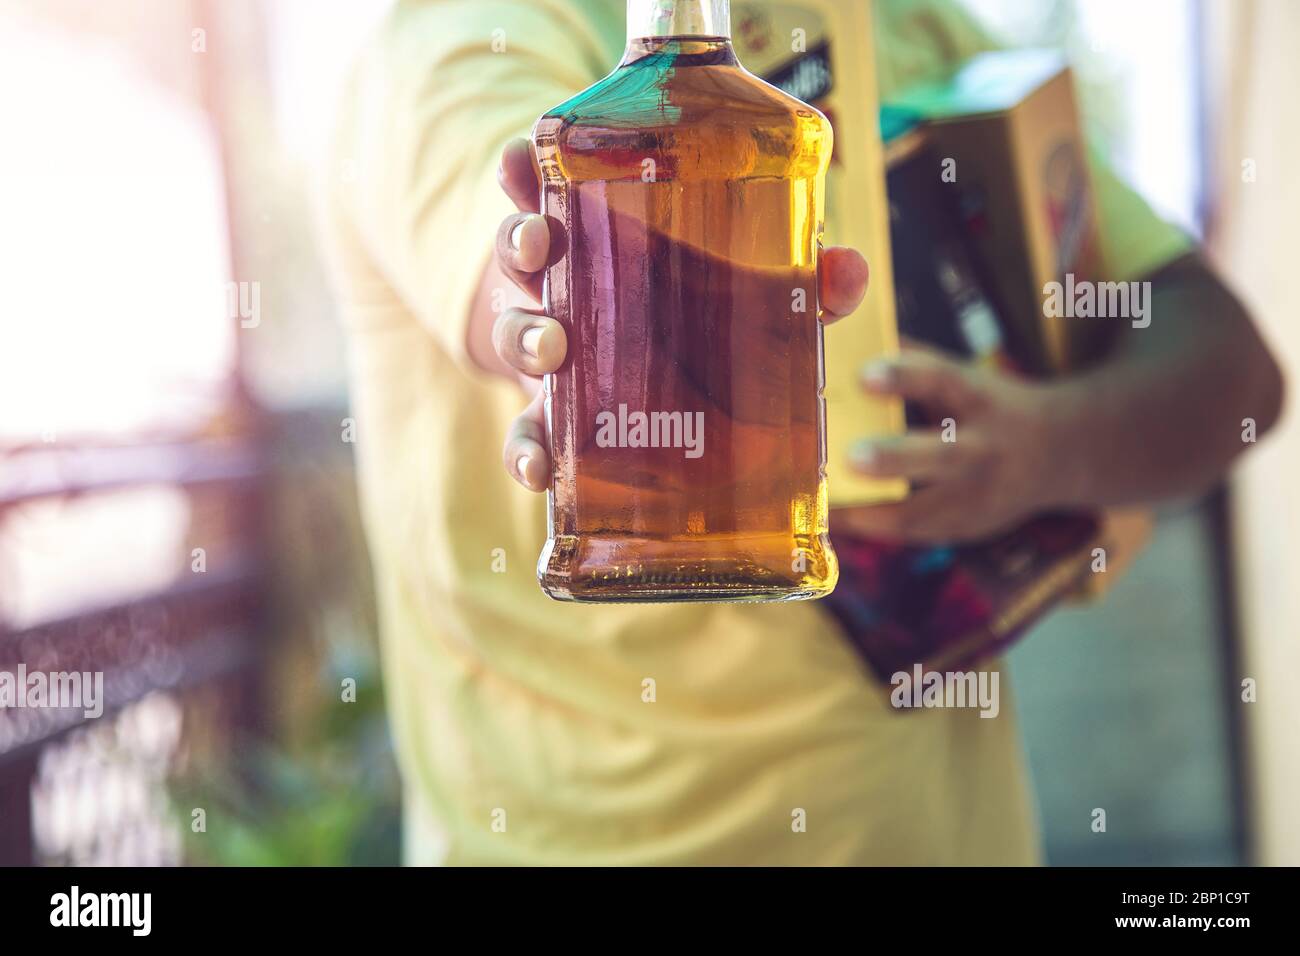 Gros plan de la main du client montrant la bouteille de liqueur de whisky lorsqu'il part après avoir acheté de la liqueur dans un magasin dans le cadre d'un confinement continu de Covid-19 Banque D'Images